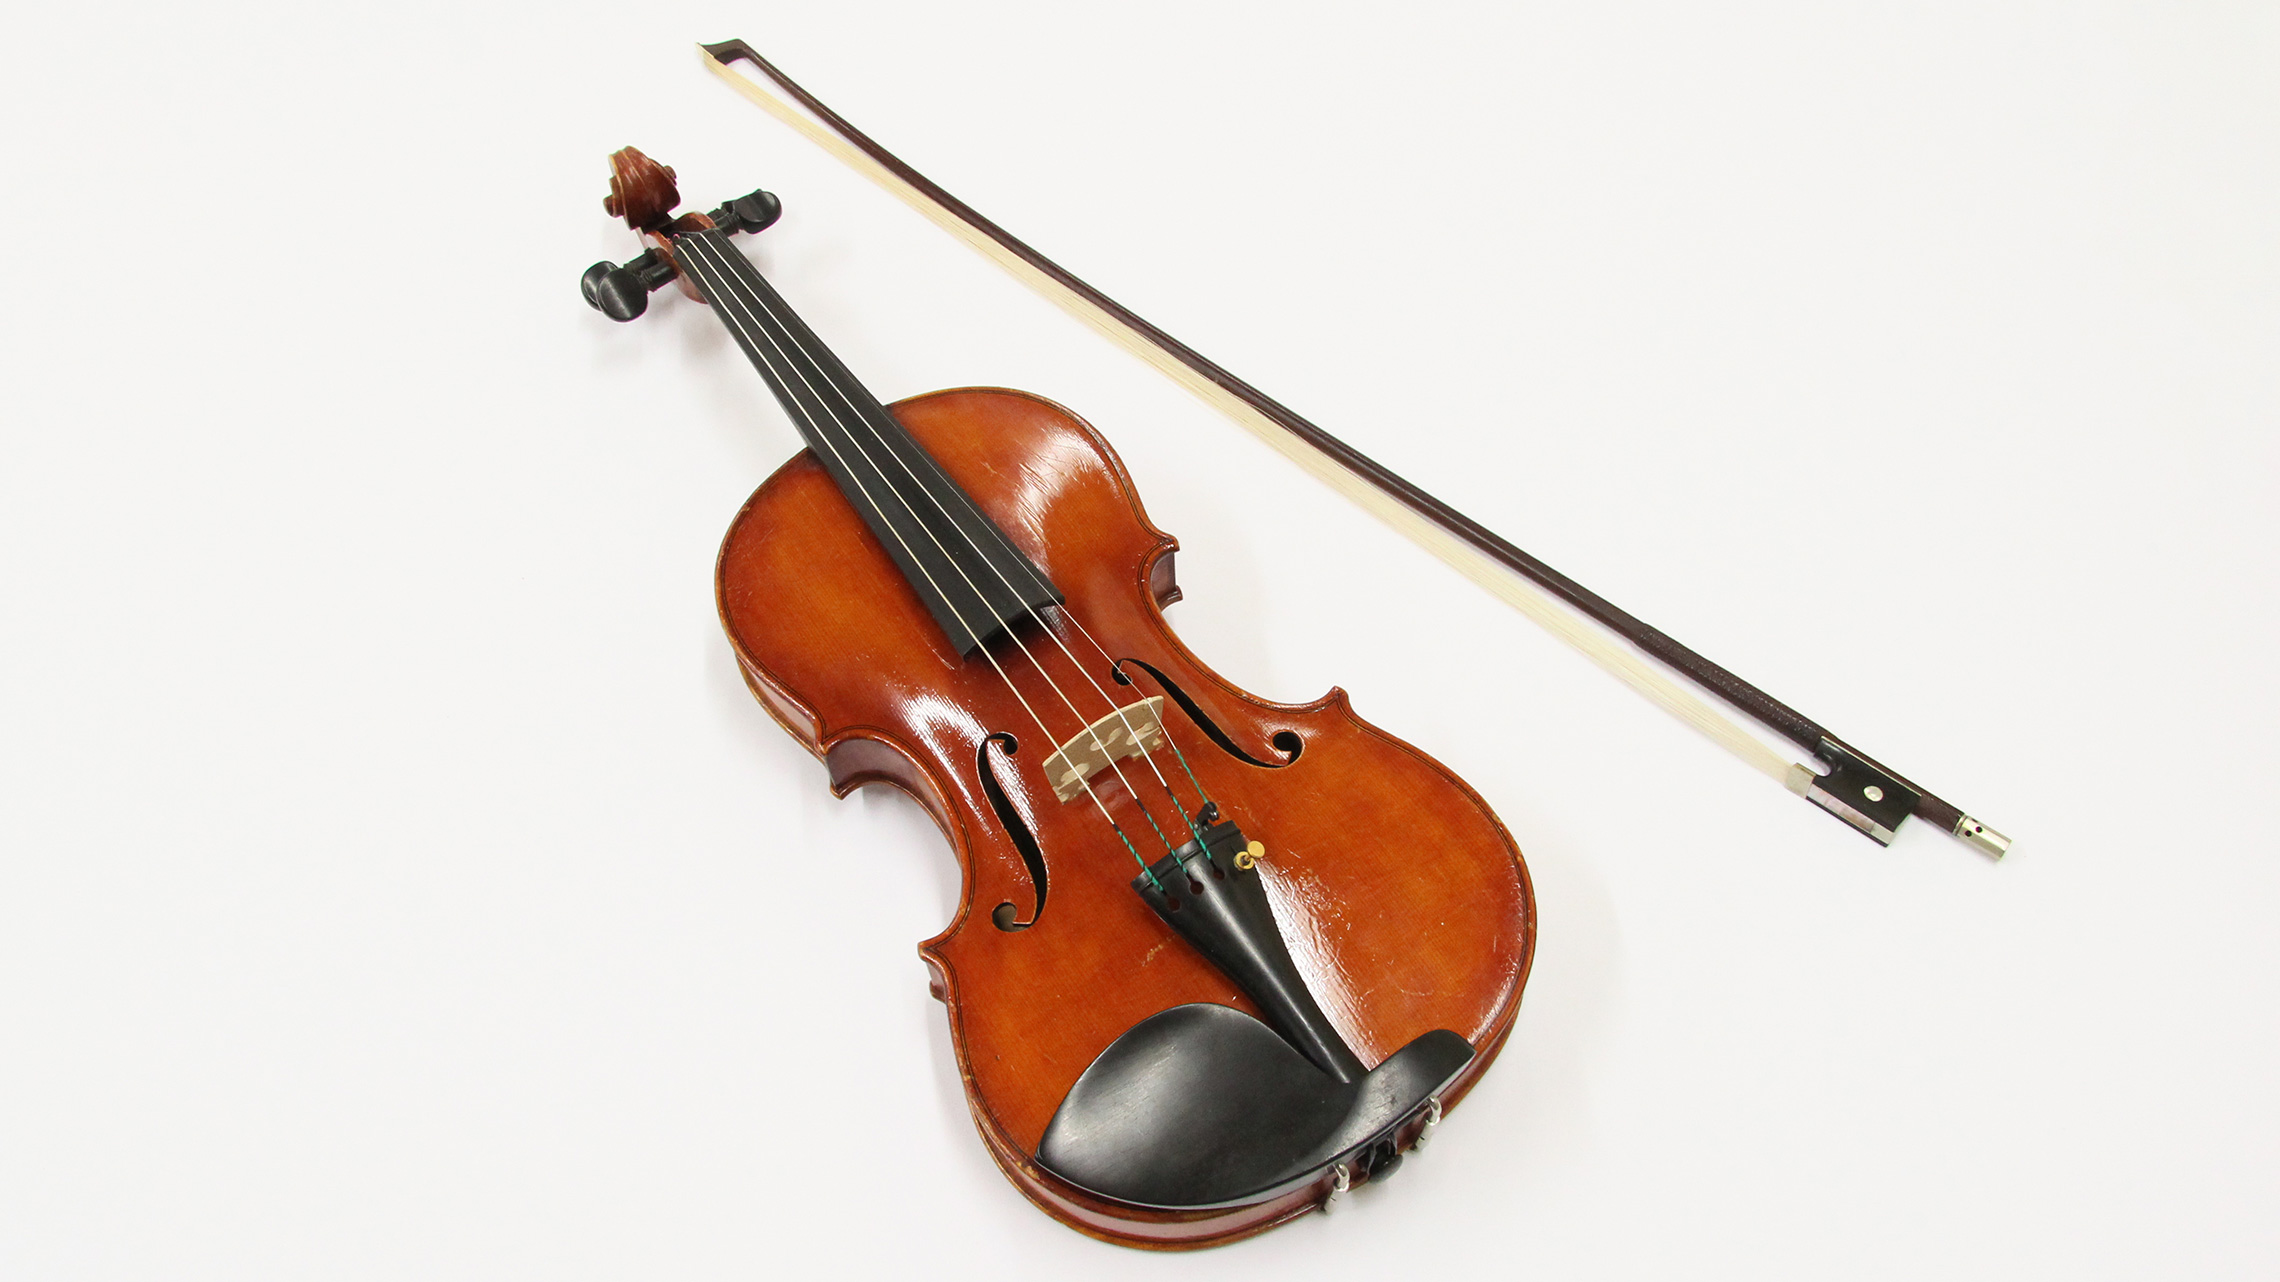 Fotografia do violino em fundo branco